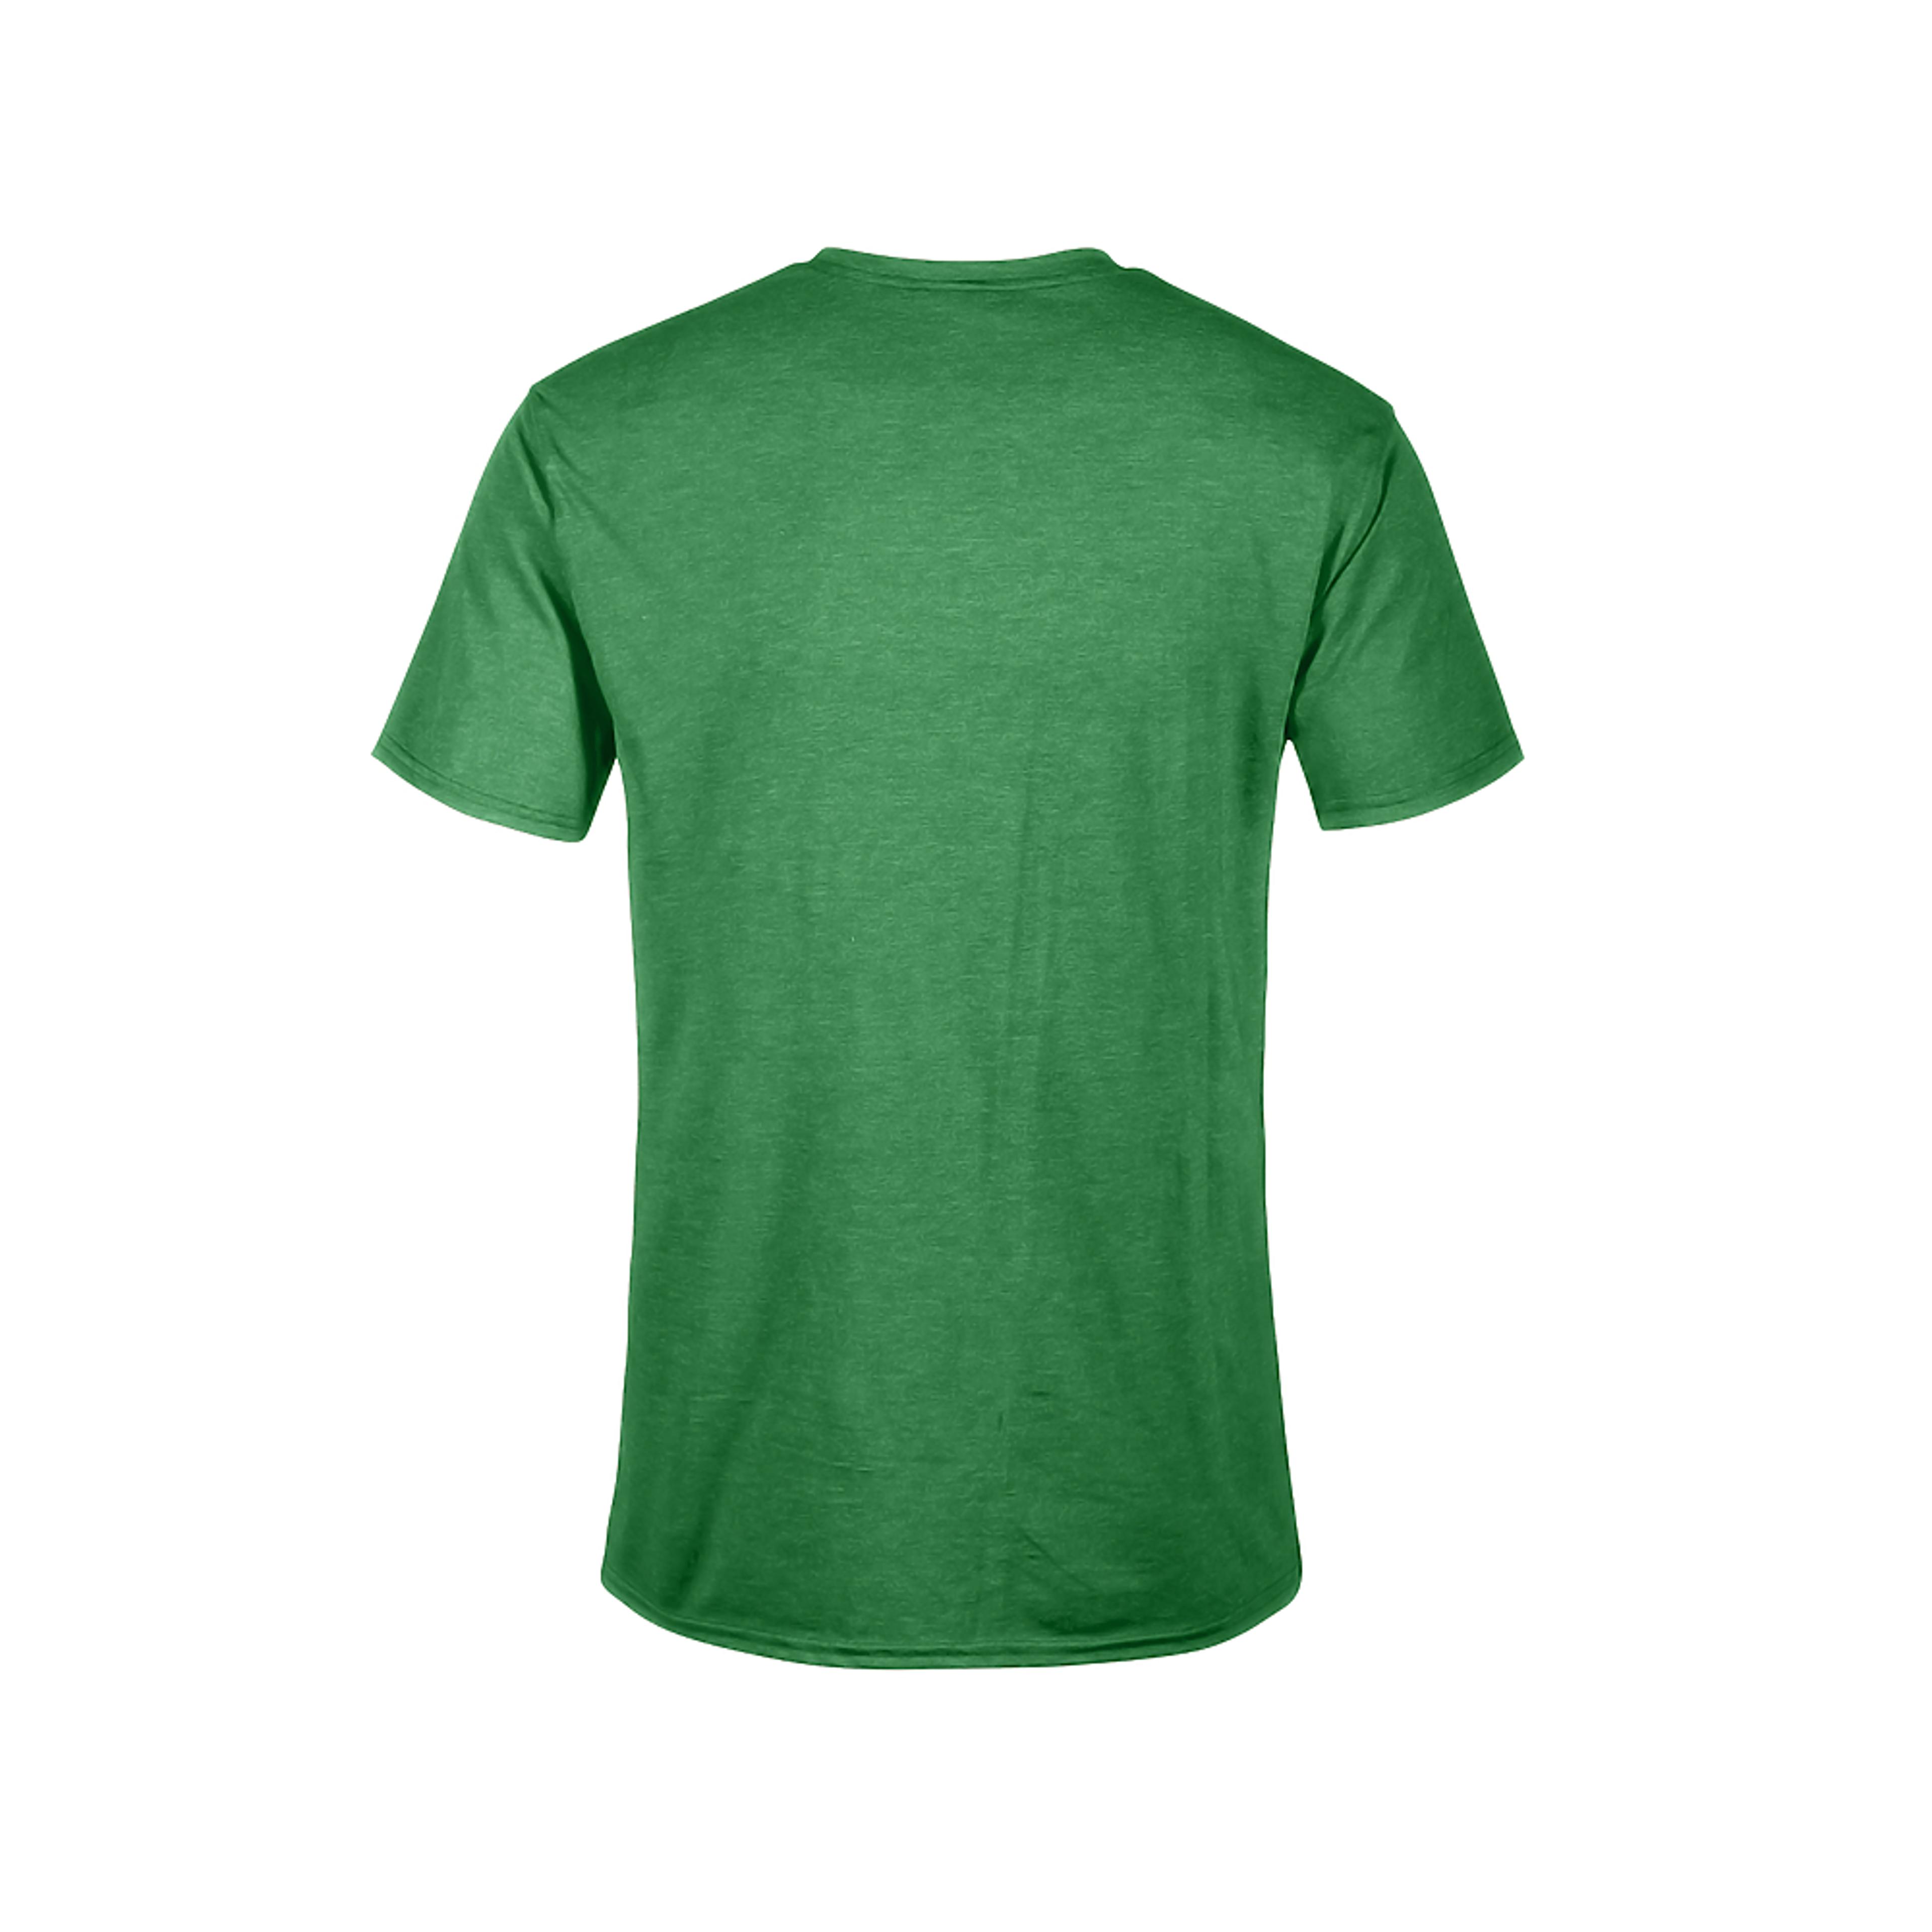 Alternate View 2 of Men's Power Rangers Green Ranger Hero T-Shirt